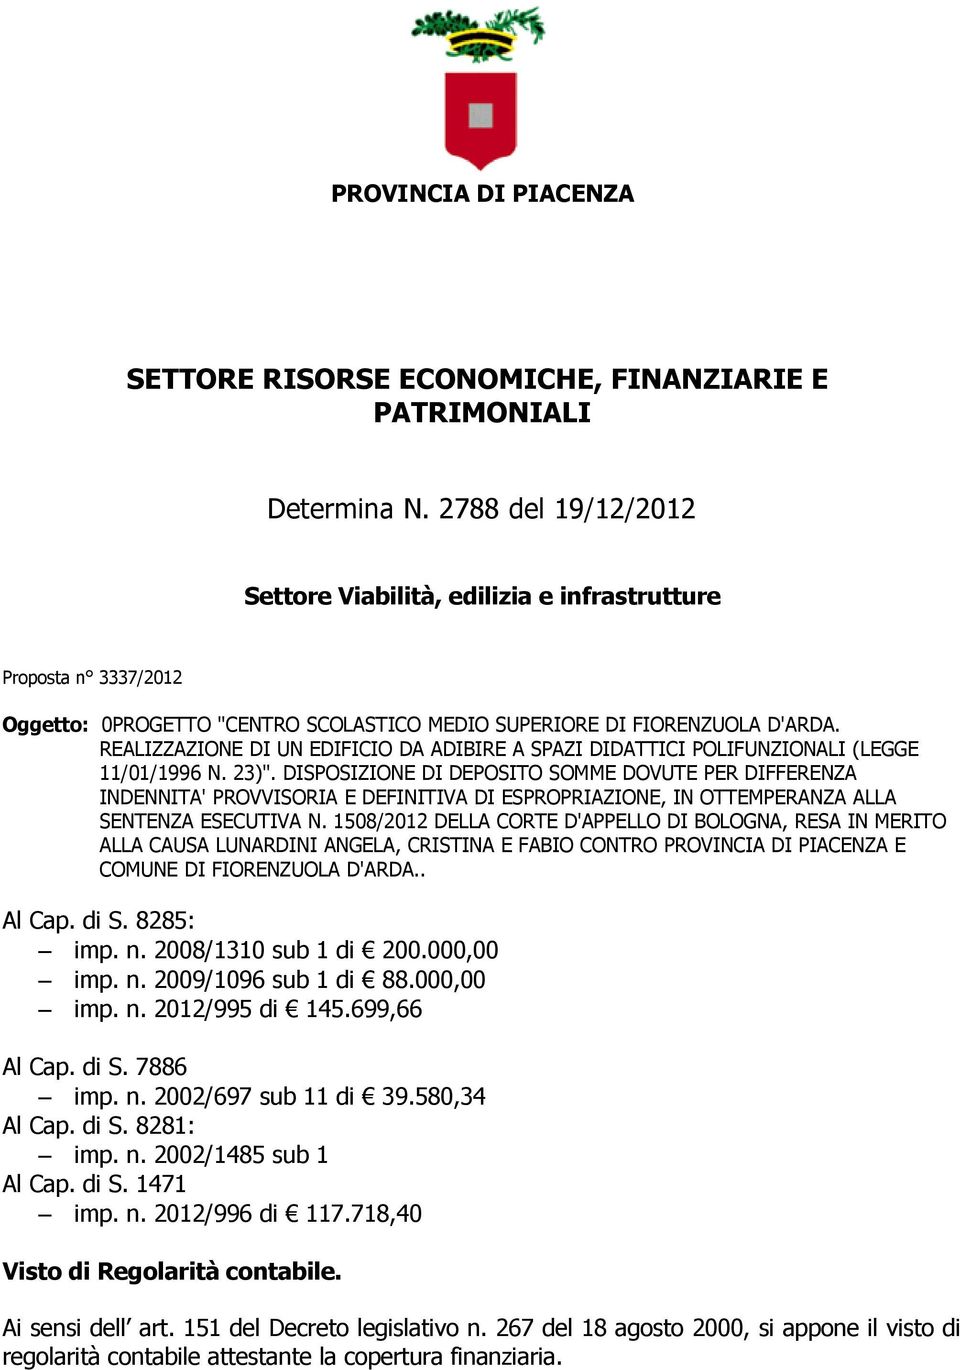 REALIZZAZIONE DI UN EDIFICIO DA ADIBIRE A SPAZI DIDATTICI POLIFUNZIONALI (LEGGE 11/01/1996 N. 23)".